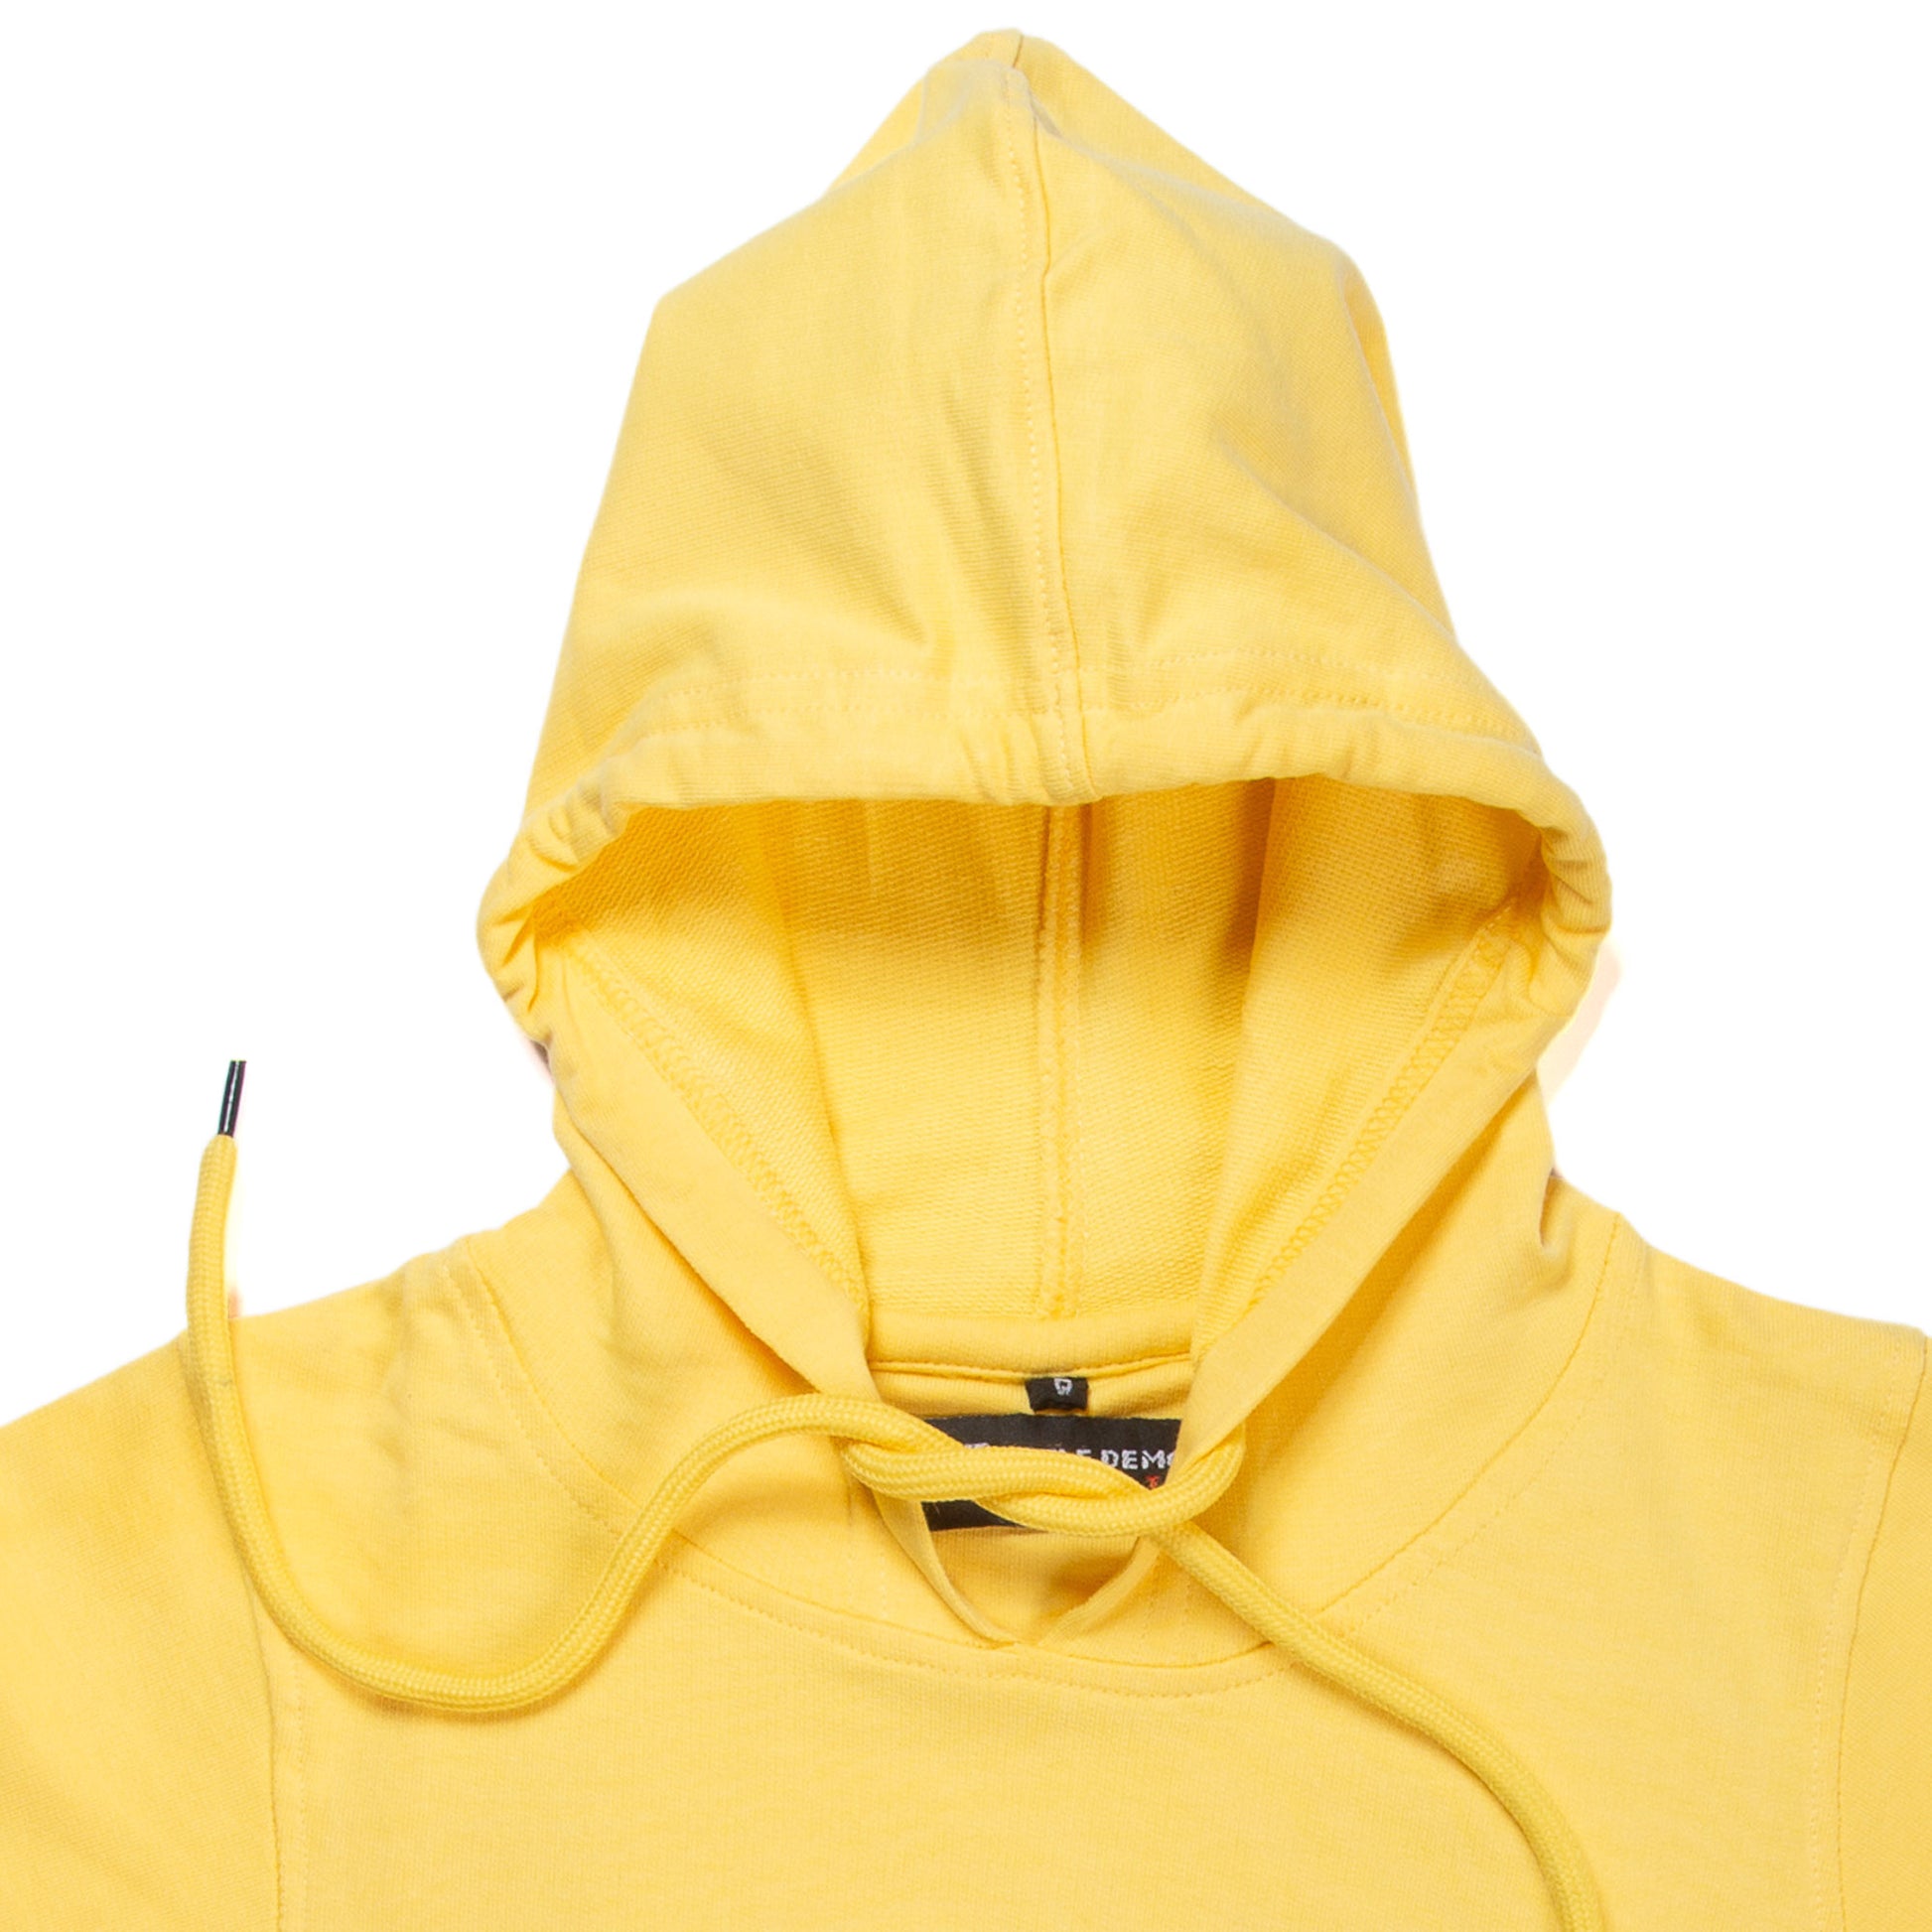 Yellow hooded sweatshirt